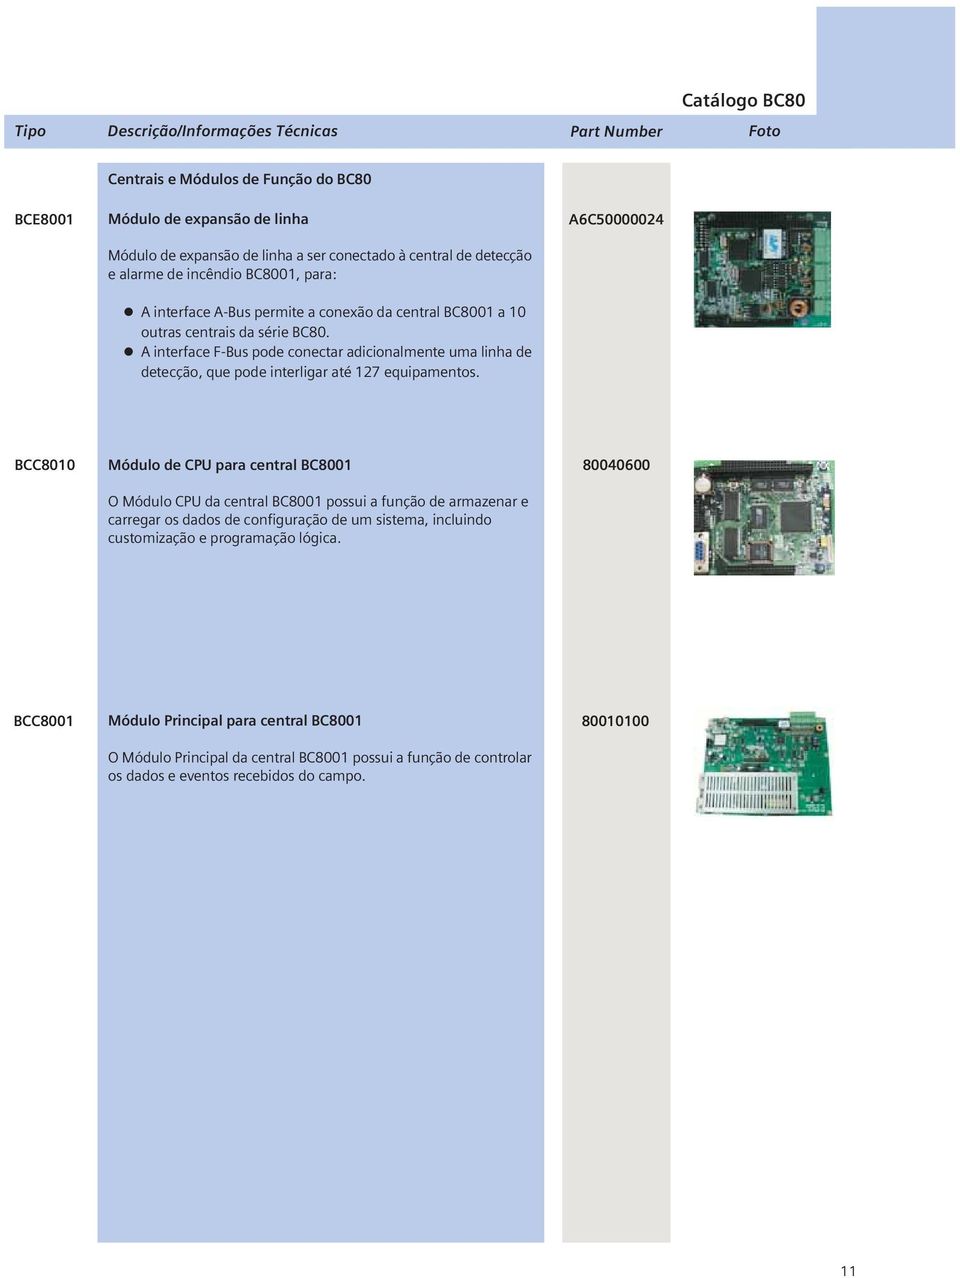 A6C50000024 BCC8010 Módulo de CPU para central BC8001 O Módulo CPU da central BC8001 possui a função de armazenar e carregar os dados de configuração de um sistema, incluindo customização